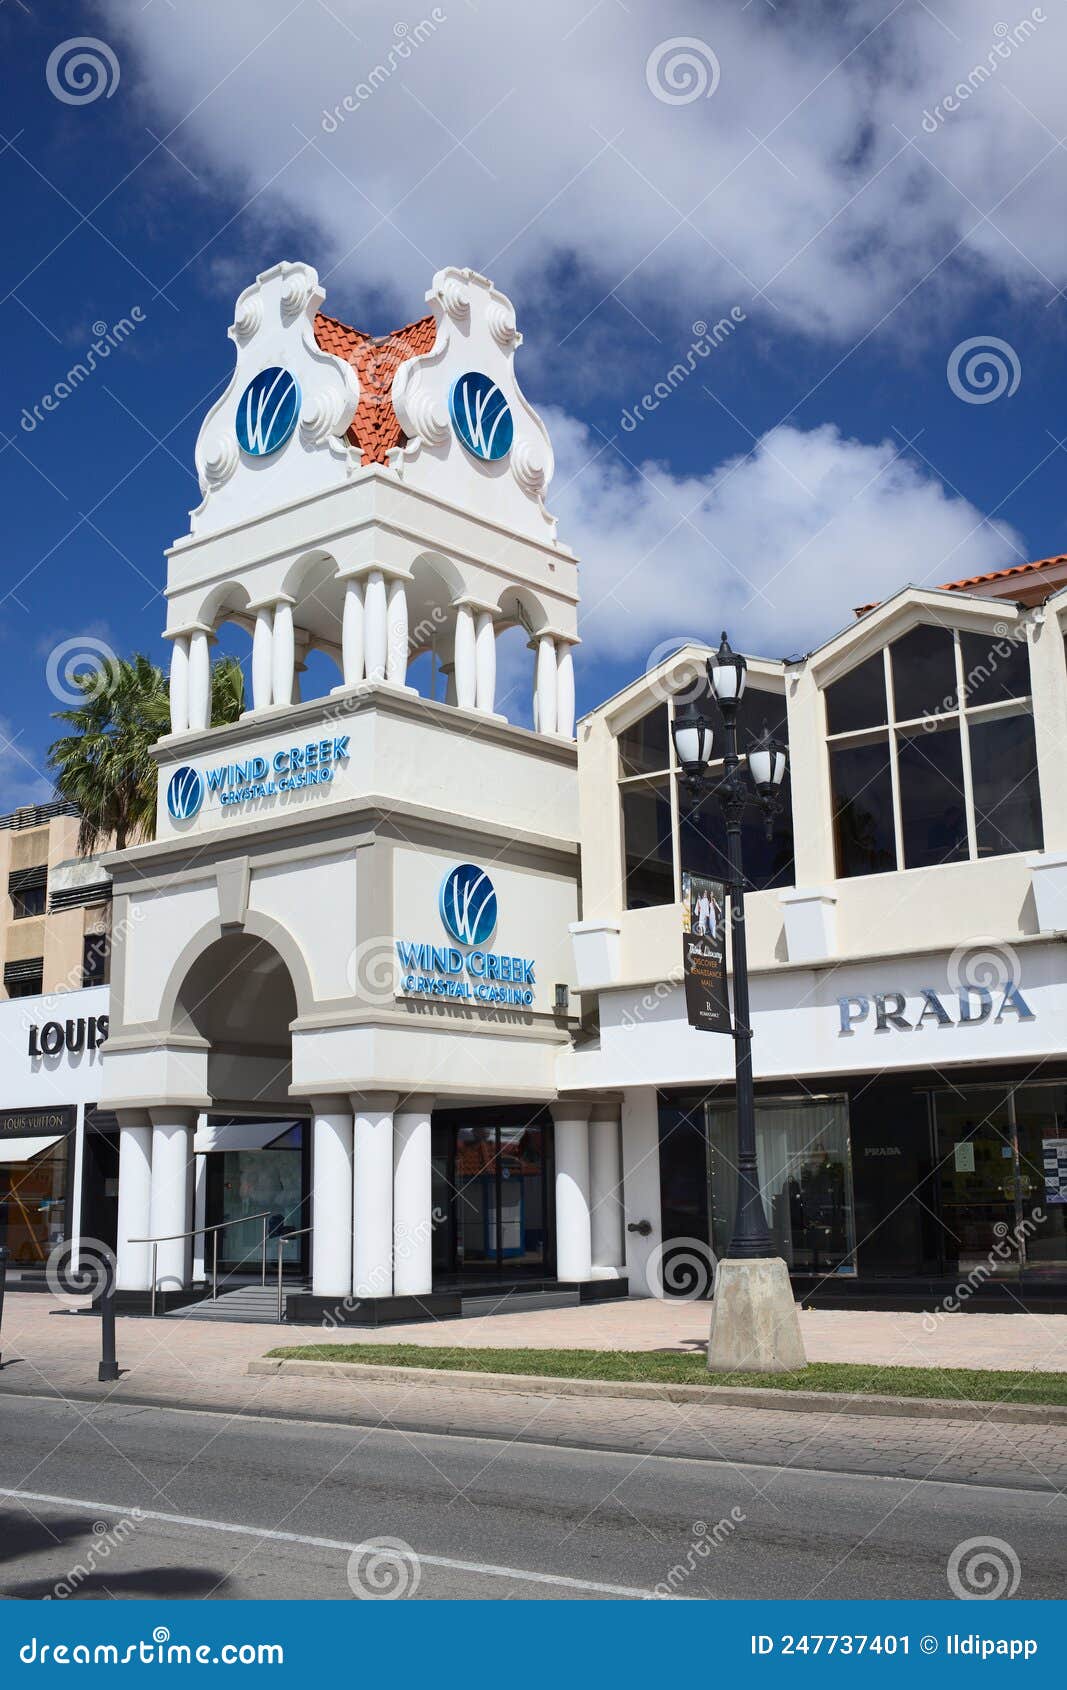 Renaissance Mall - Oranjestad, Aruba 0218 - Picture of Renaissance